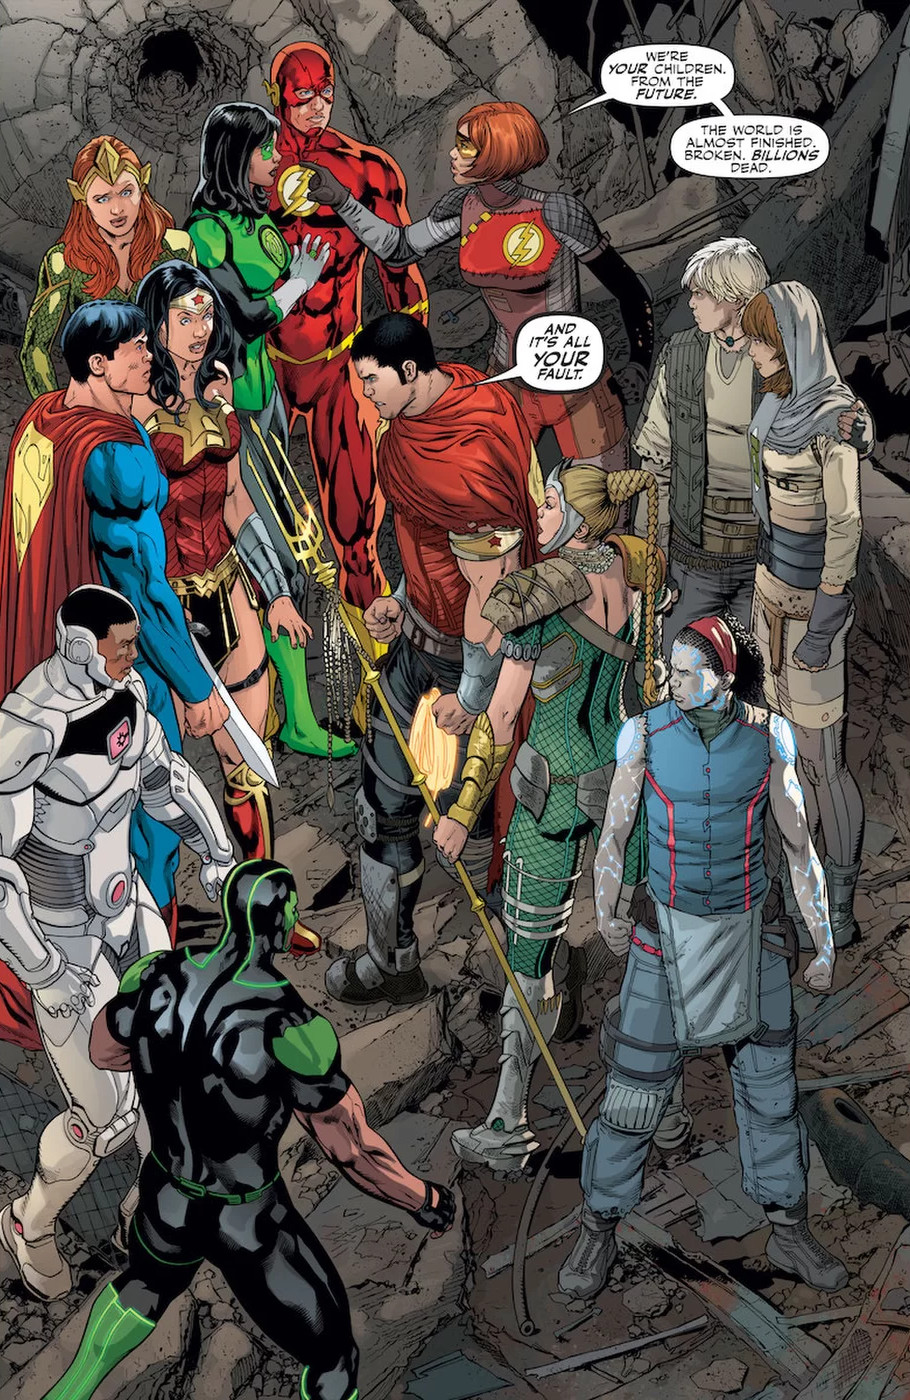 Os filhos da Liga da Justiça - Preview de Justice League #26